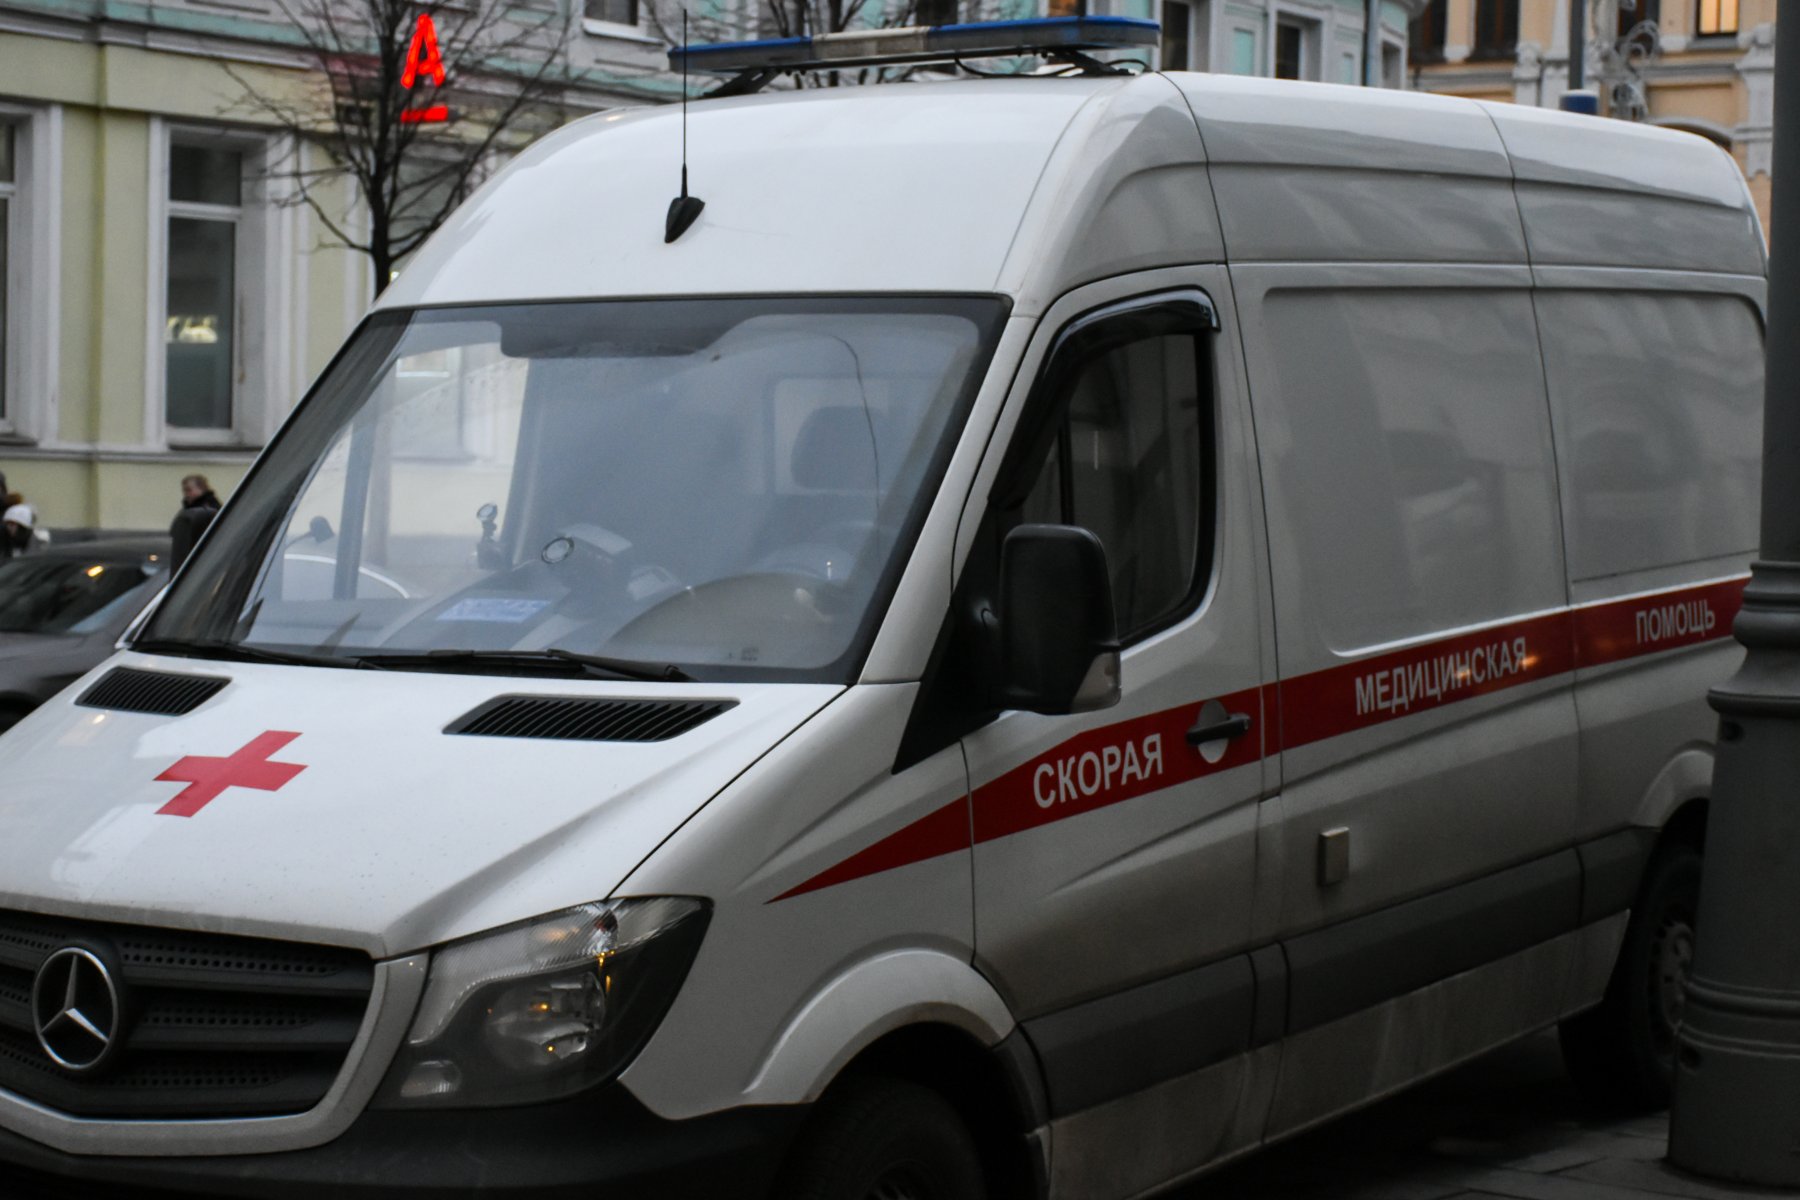 Прокуратура проводит проверку по факту гибели малолетнего ребёнка в Подольске